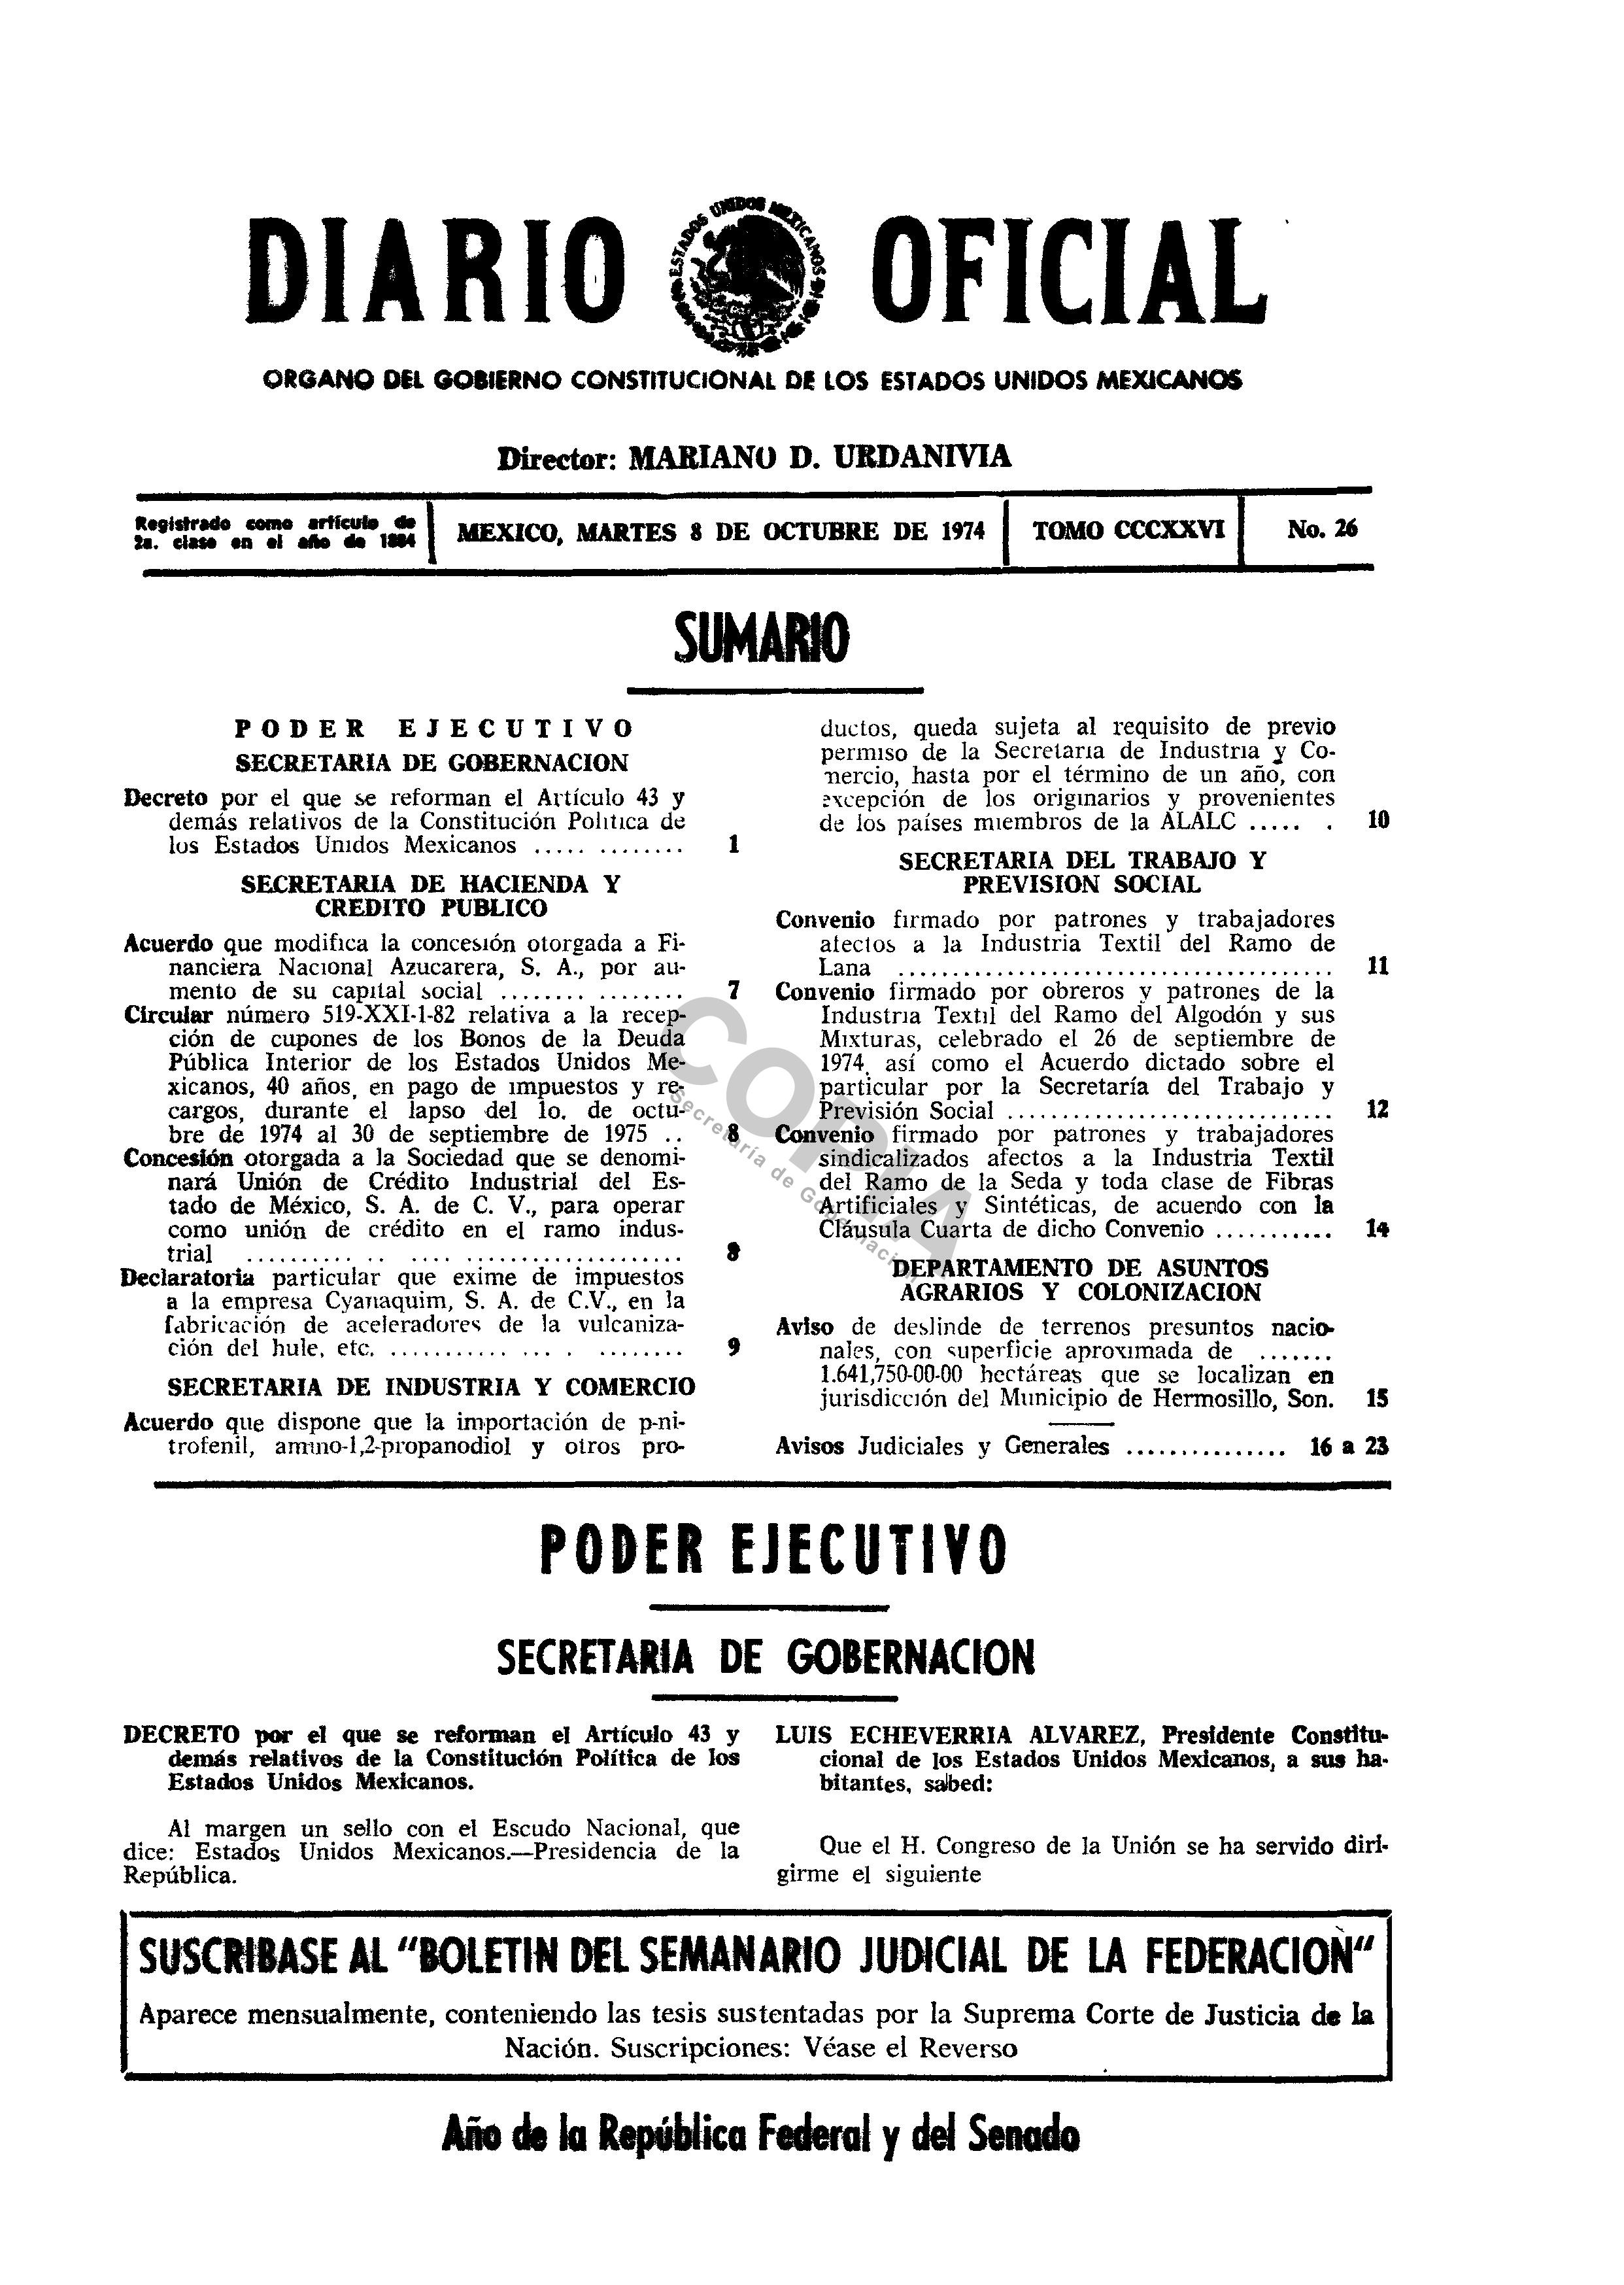 Decreto por el que se reforma el Artículo 43 el 8 de octubre de 1974.